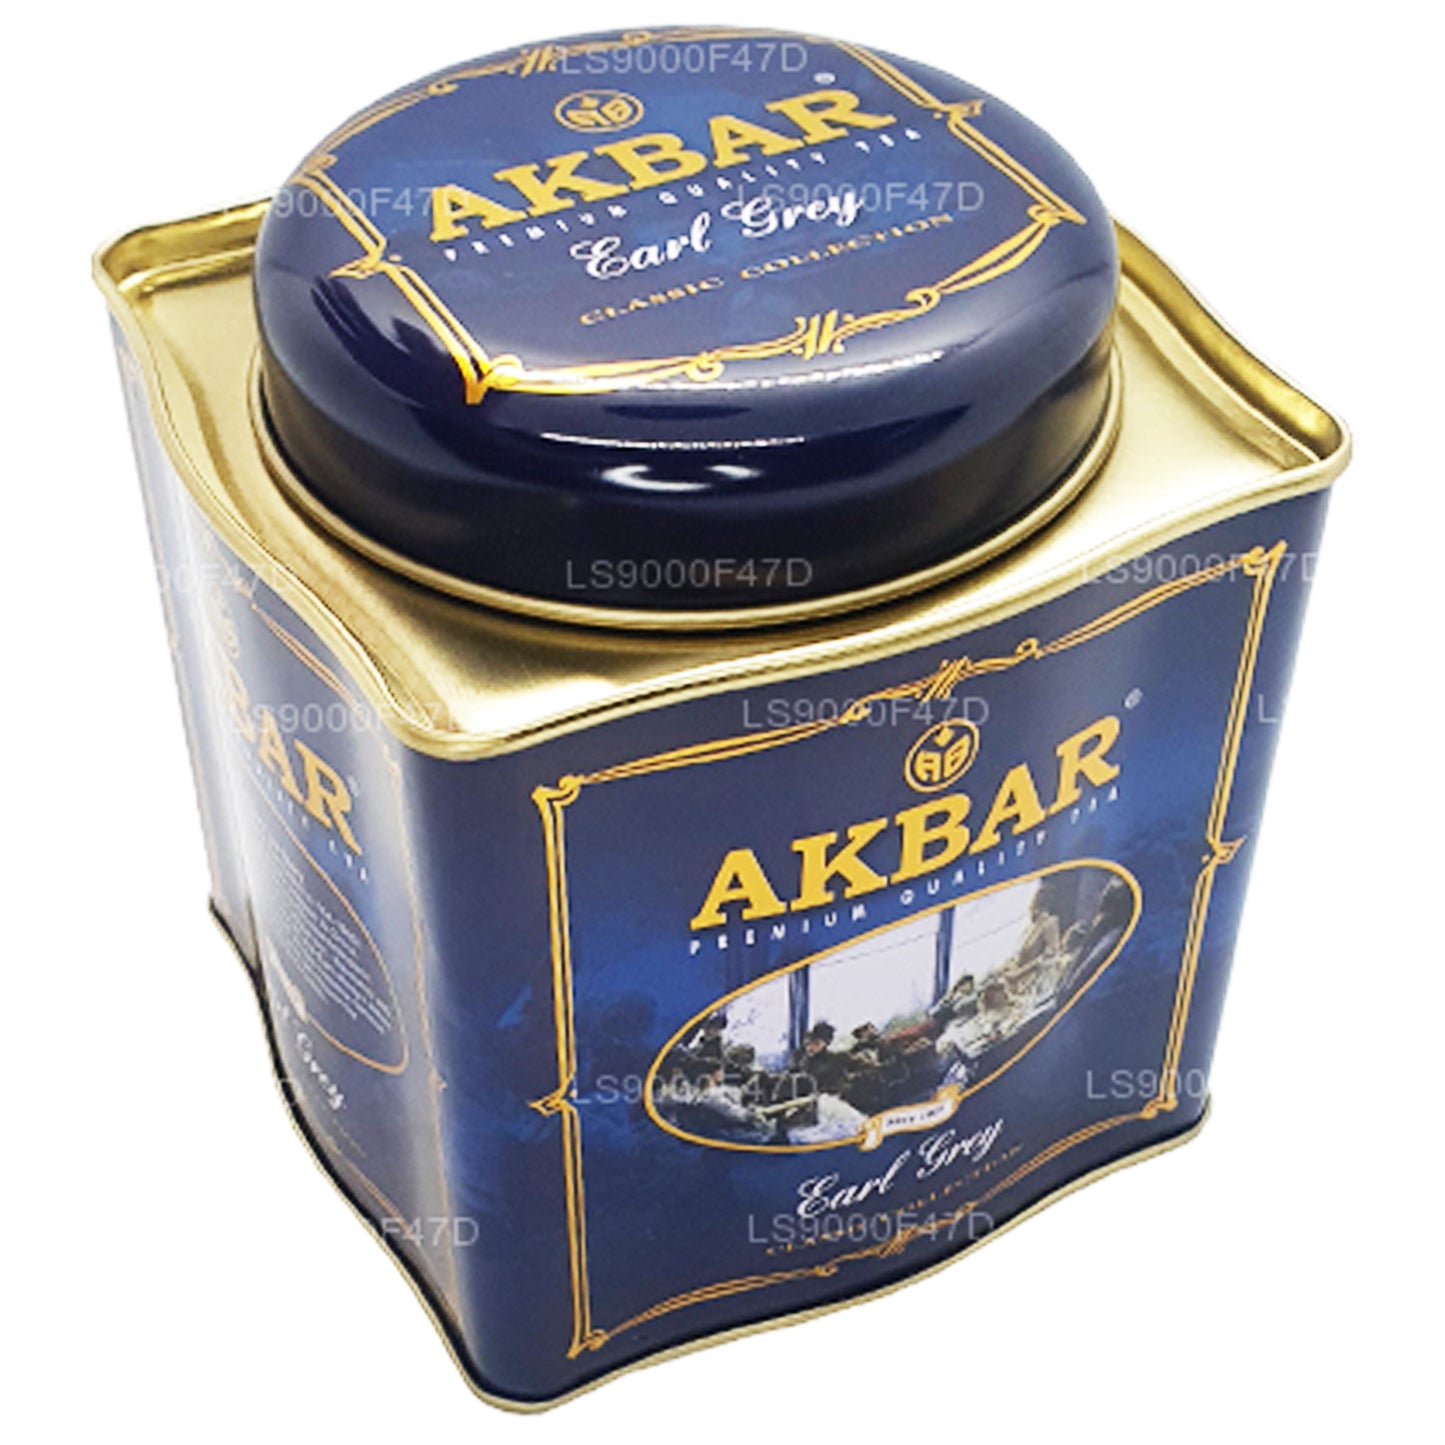 Akbar Classic Earl Grey Leaf thee (250 g) blikje